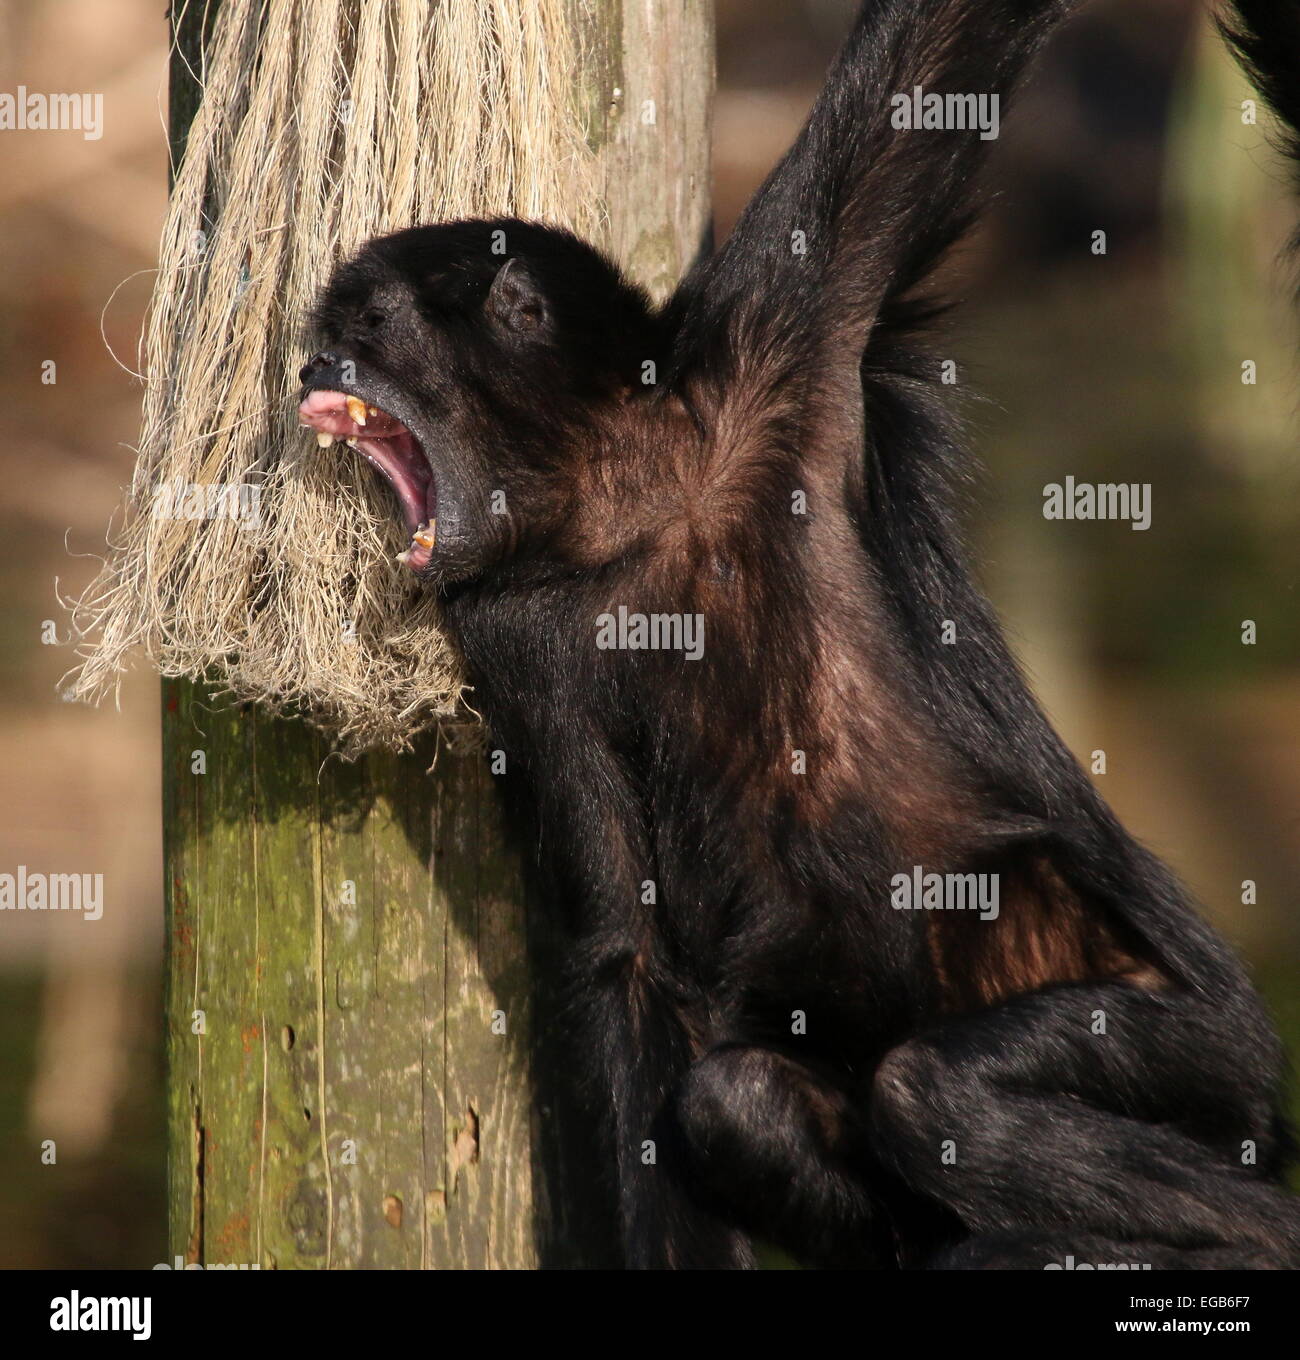 Aullido de cabeza negra colombiana mono araña (Ateles fusciceps robustus) en el zoo de Emmen, Países Bajos Foto de stock